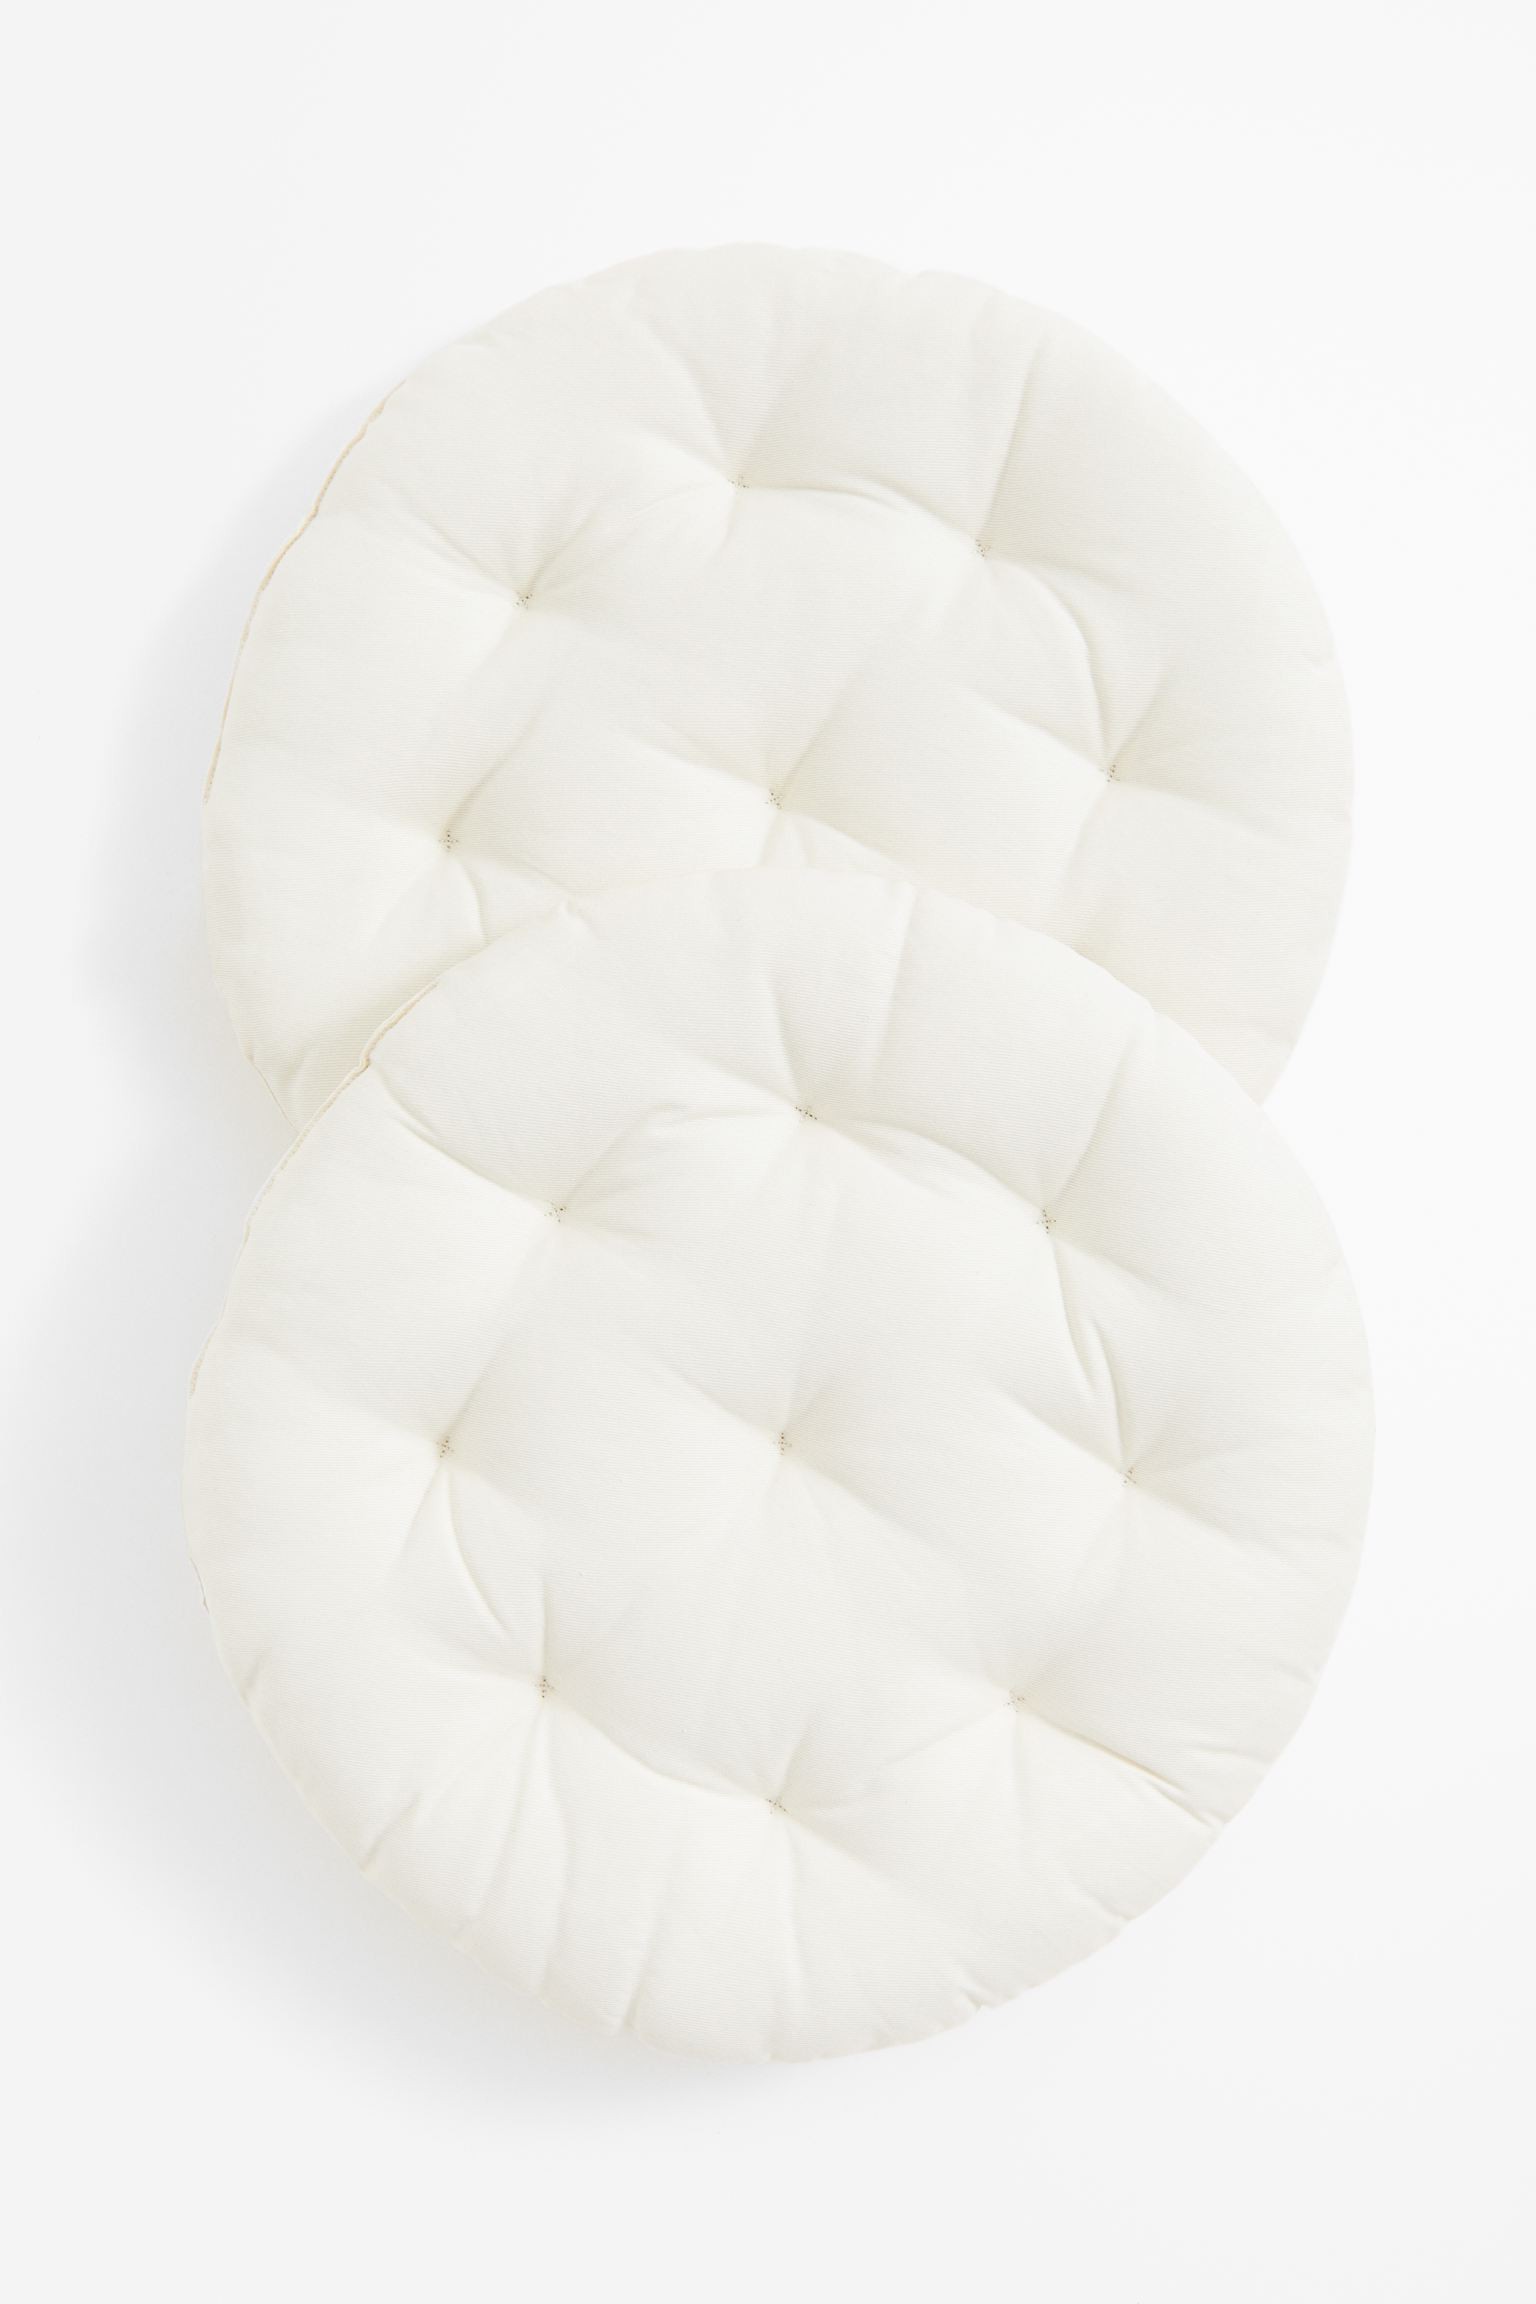 Круглая подушка на стул, 2 шт., Натуральный белый, Разные размеры